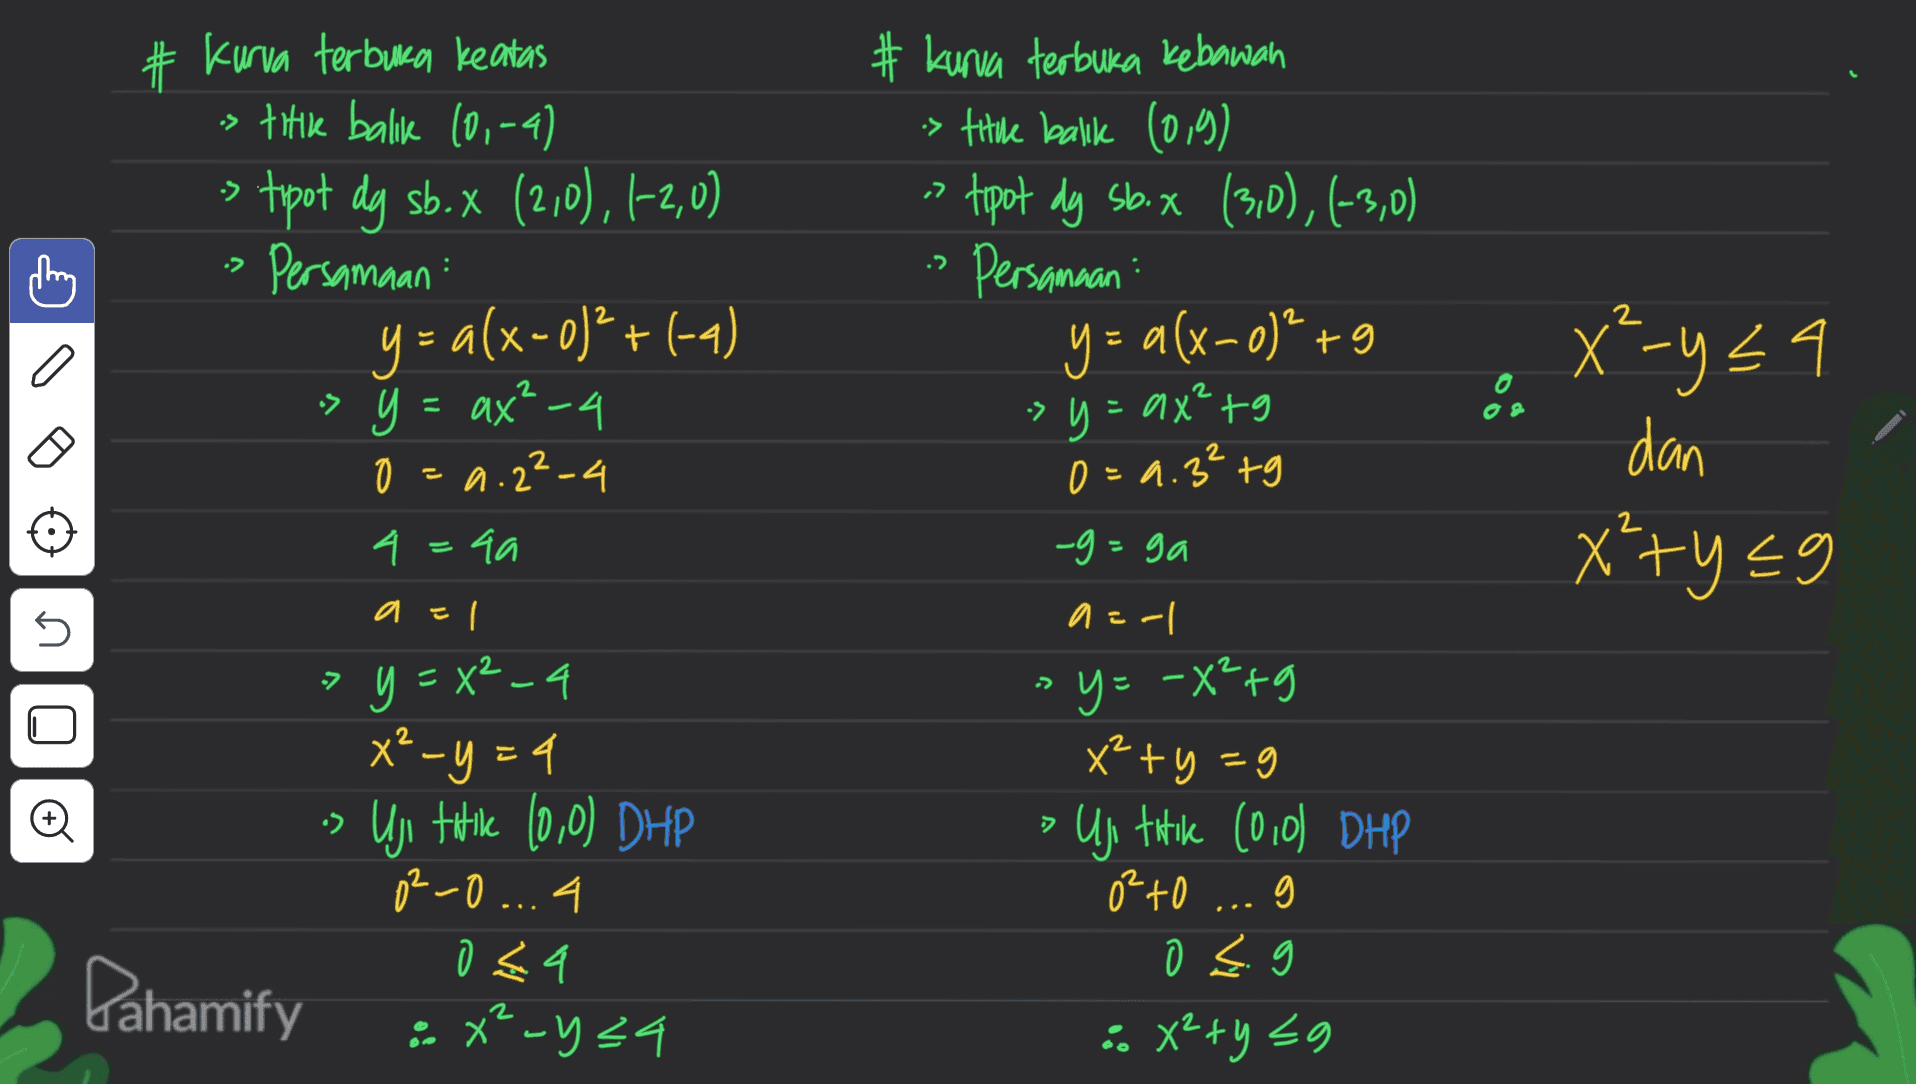 : ,2 :> # Kurva terbuka keatas s titik balik 10,-4) > tipot dg sb. X (210), 1-2,0) Persamaan y = a(x-0)+(-4) > y = ax? -4 y 0 0 =a.2²-4 4 4 =4a qa # kurva terbuka kebawah s titule balk (0,9) tipot dy sb.x (3,0), (-3,0) Persamaan : y= a(x-0)²+g > y=ax²tg 0 = 9.3²tg 2 2 •> & • x²-y24 dan x²+yeg 2 -g=ga C 5 a=1 a=-1 y=x²-4 y = -X²+g •) > x2-y = 4 Uji titile (0,0) DHP 0²-0 ... 4 044 : x²-y24 x +y = 9 • Uji titike (010) DHP 0²to g o s. :. x+y 20 Pahamify 